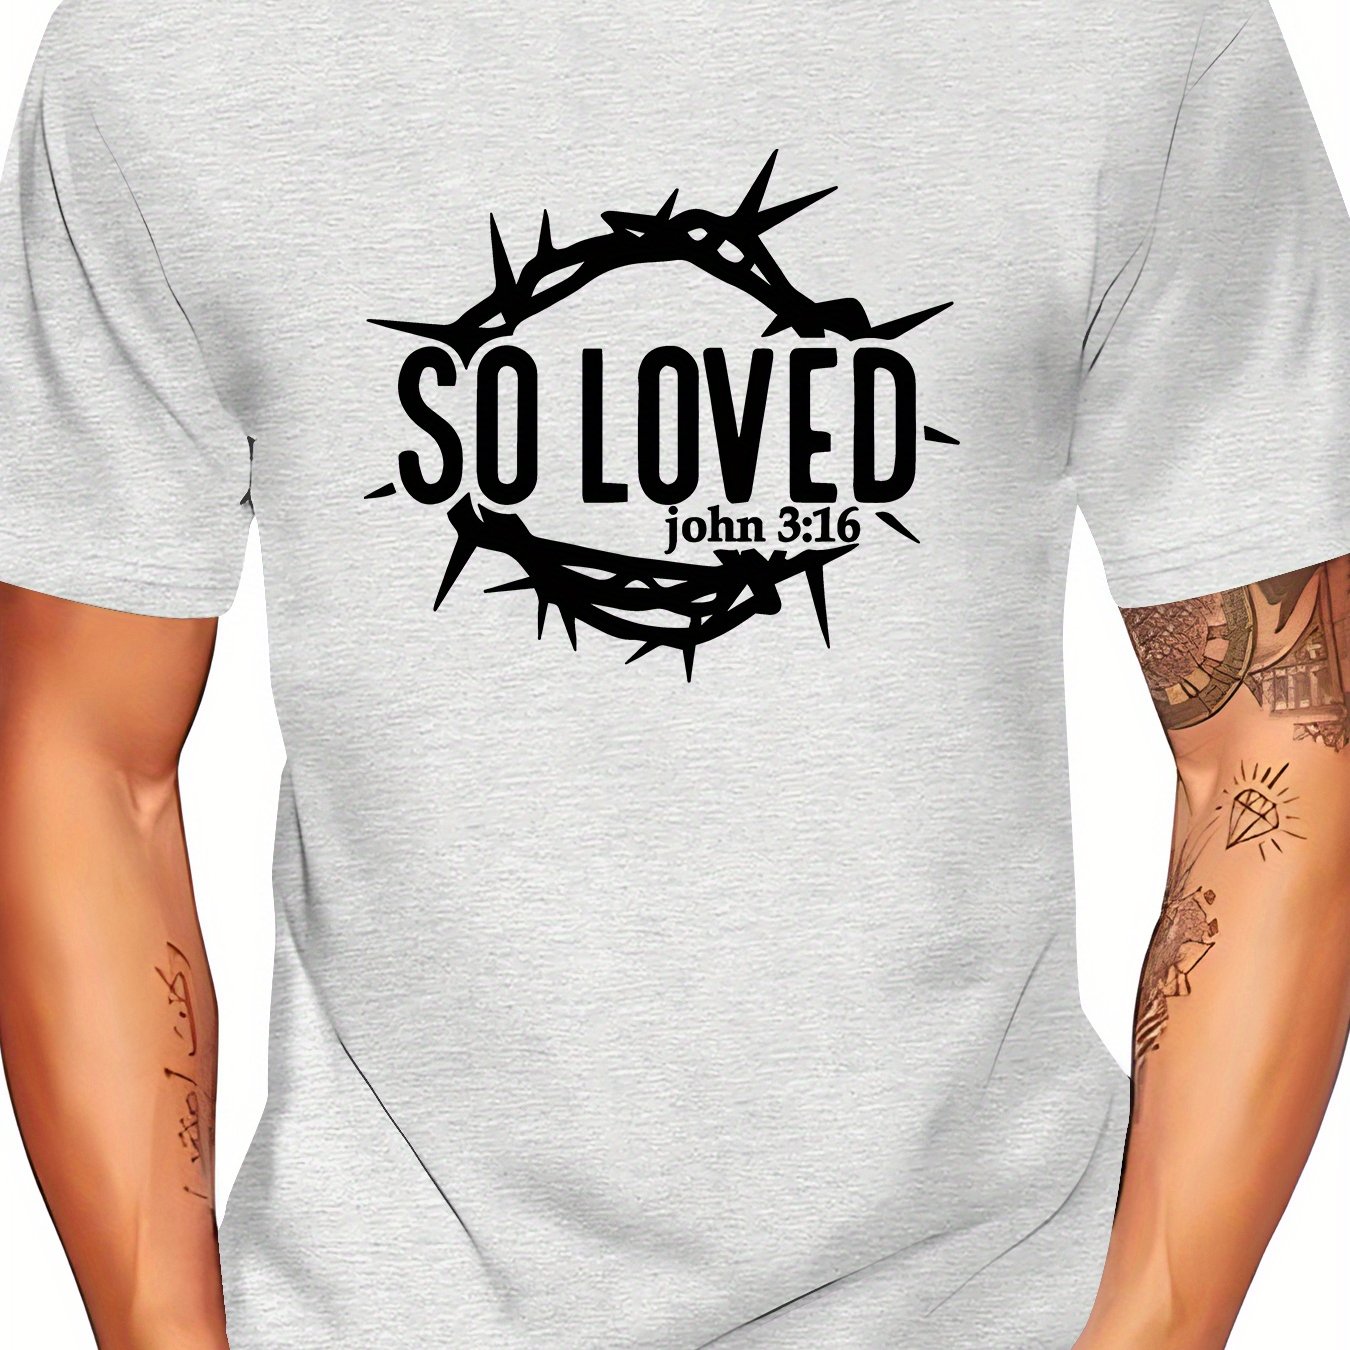 So Loved Men's Christian T-shirt claimedbygoddesigns